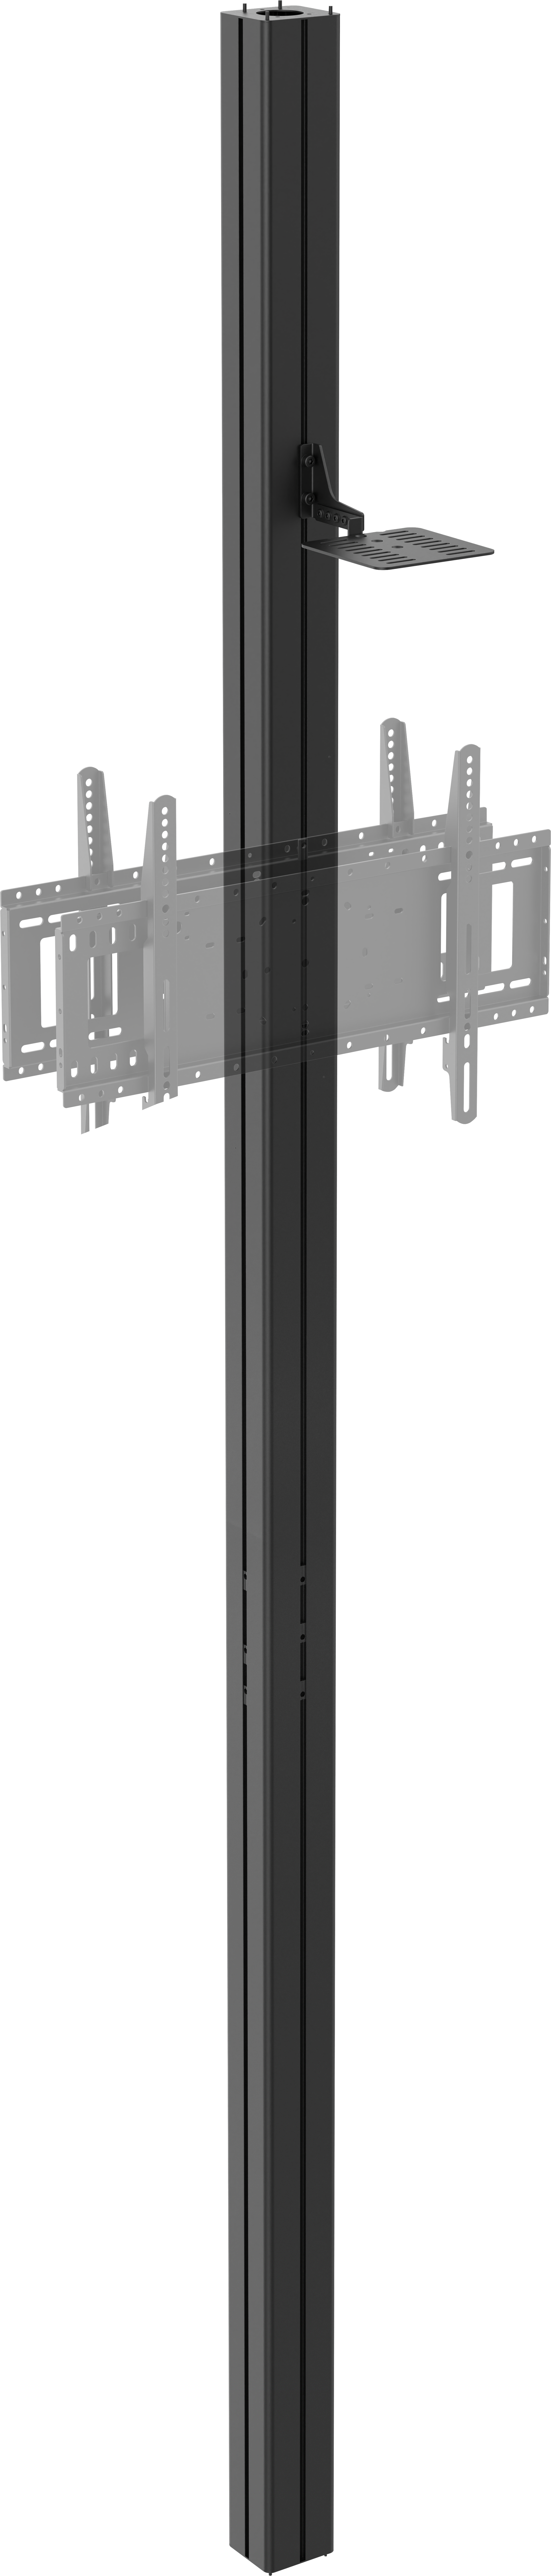 An image showing Coluna de Exibição do Chão ao Teto